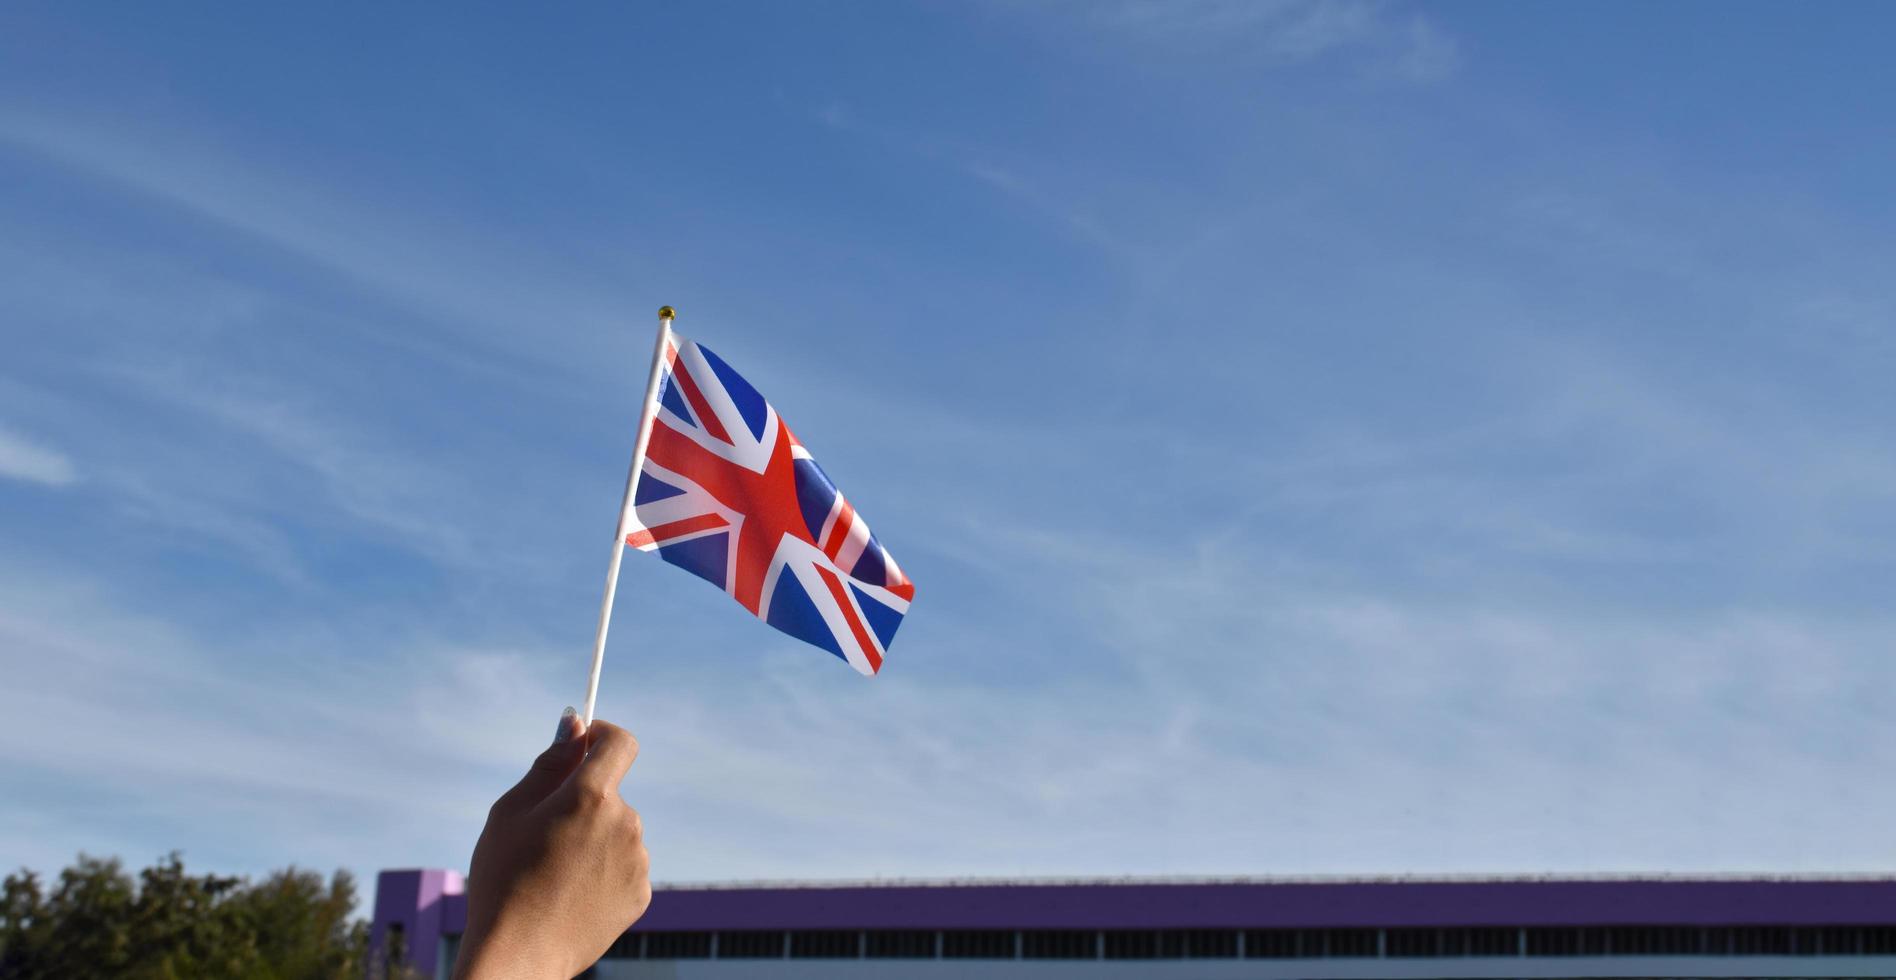 förenad rike nationell flagga eller de union domkraft flagga innehav i hand och vinka på blå himmel bakgrund, mjuk och selektiv fokus. foto